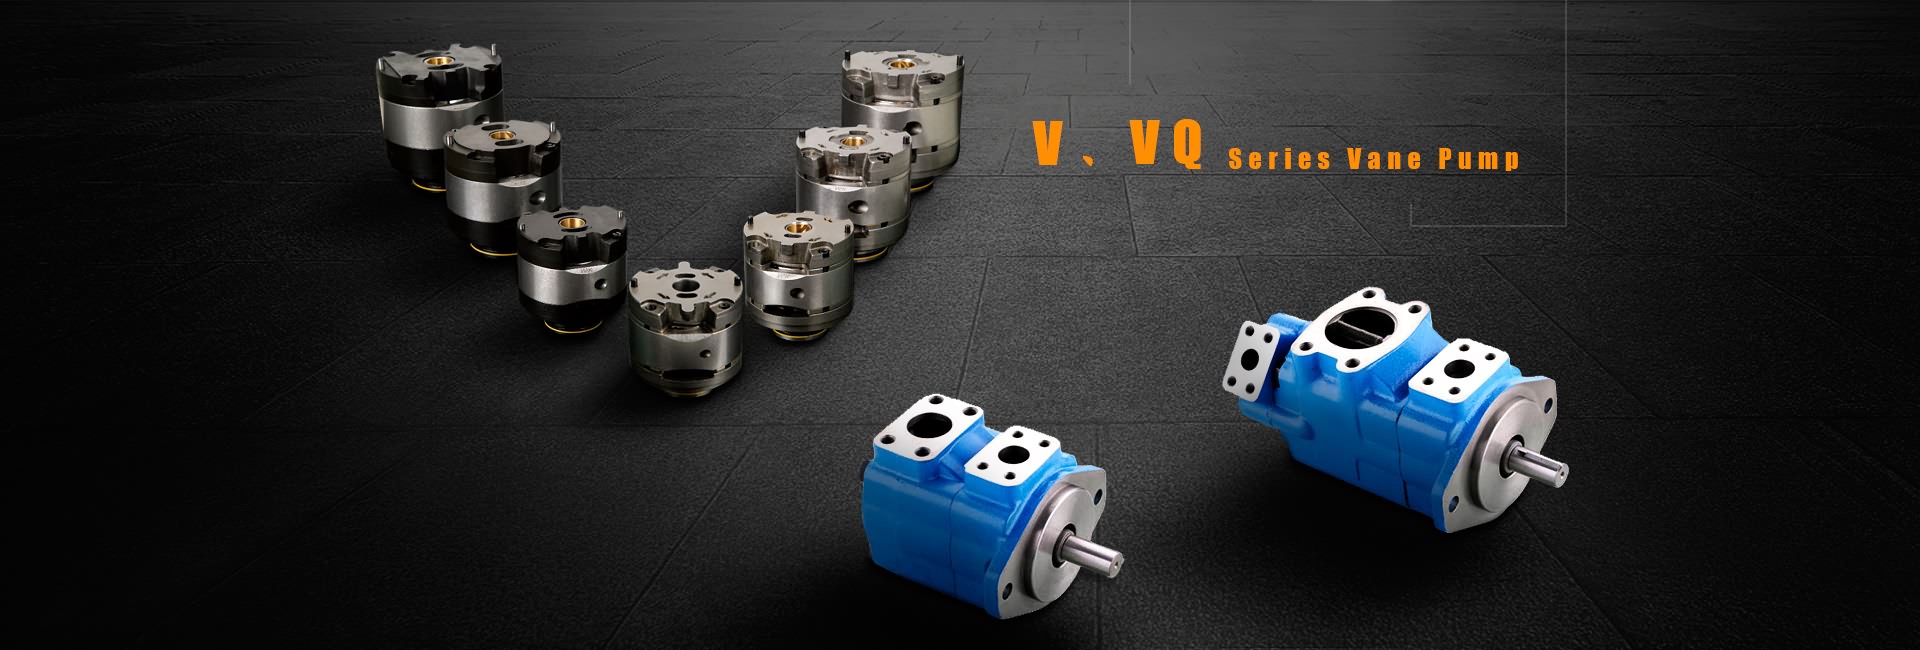 V,VQ Series Vane Pump